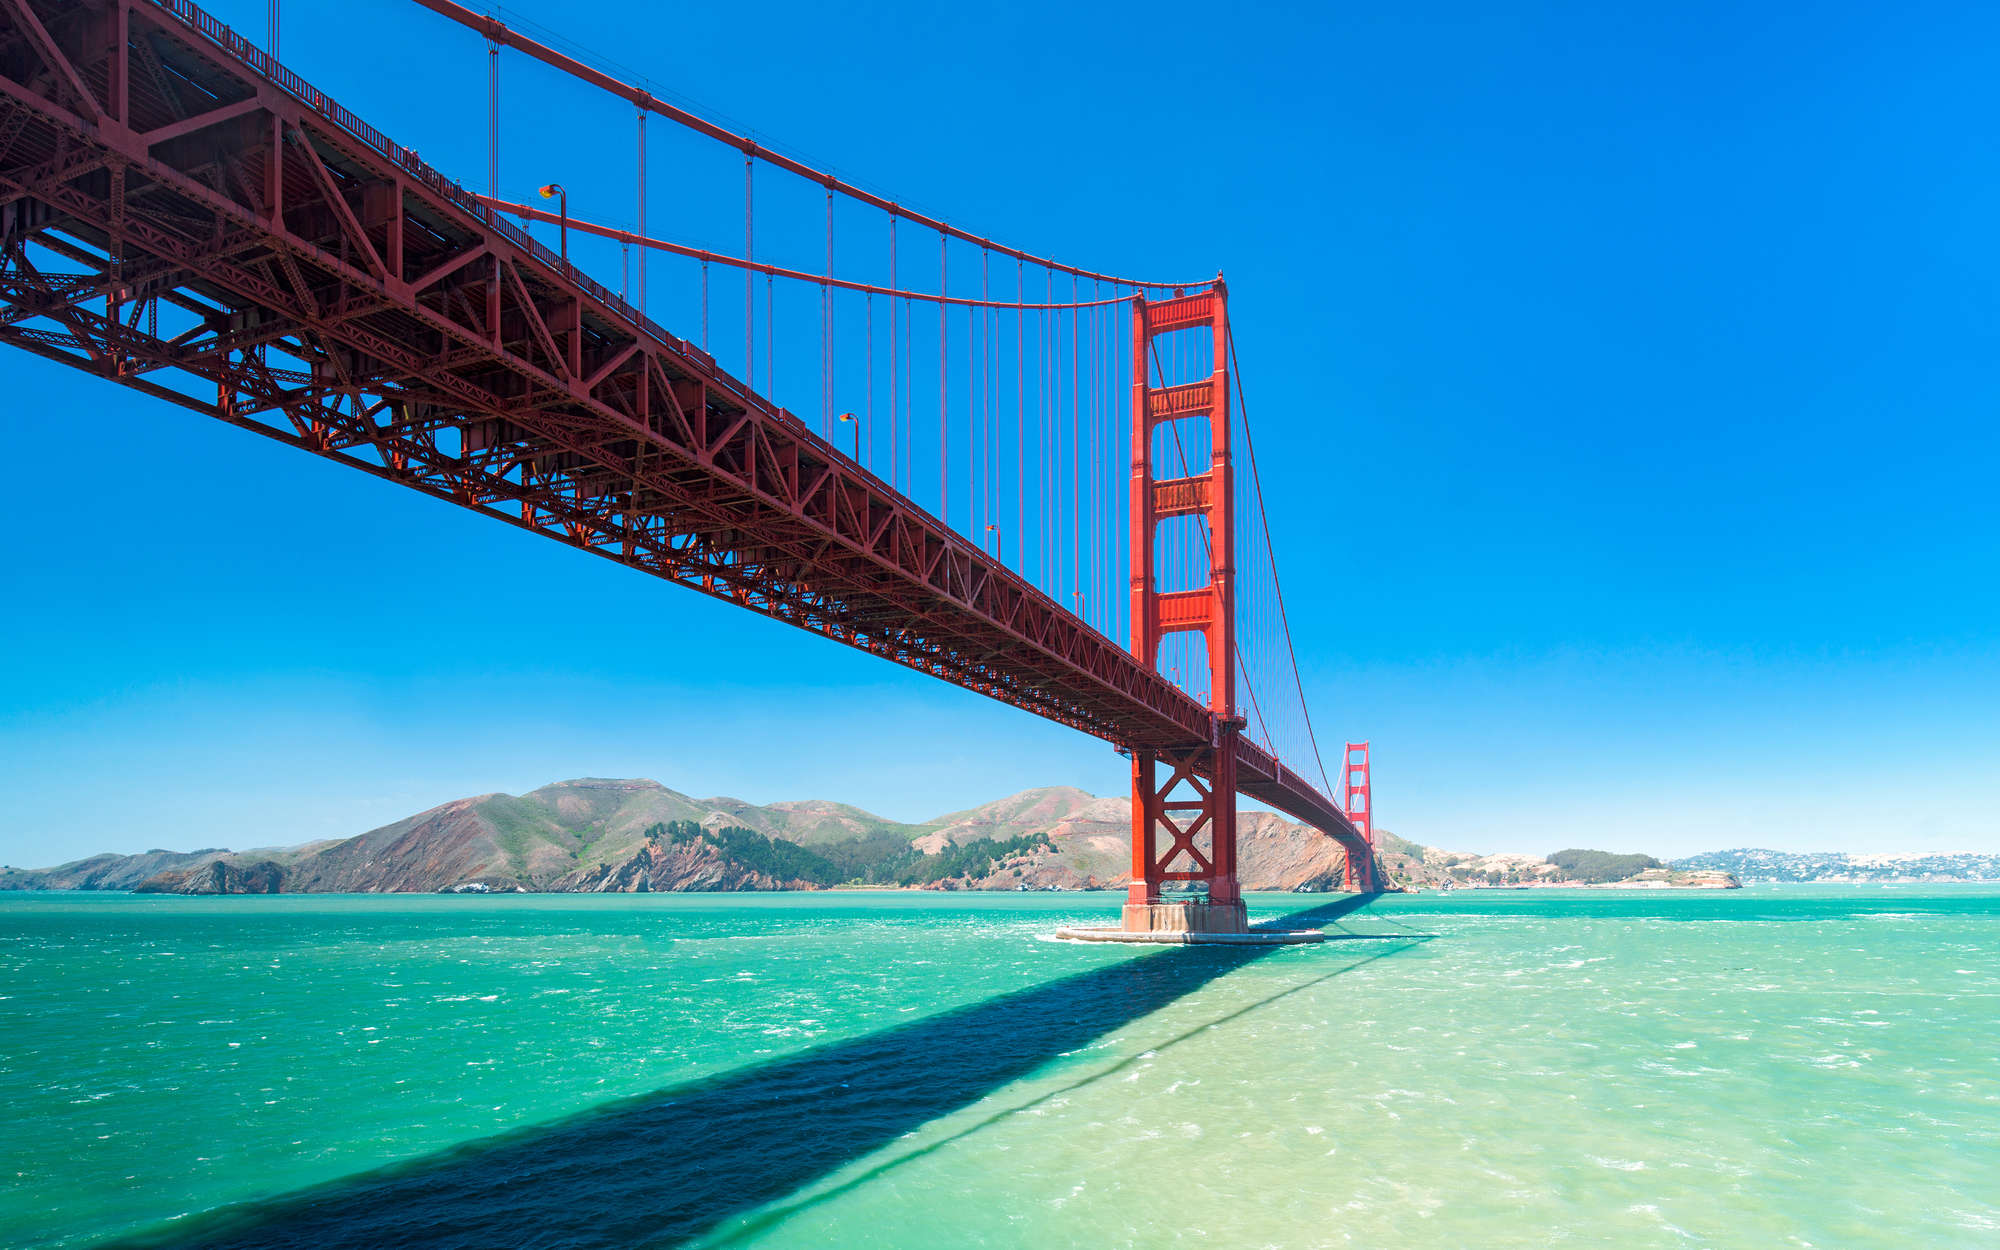             Papel pintado Puente Golden Gate en San Francisco - Premium Smooth Nonwoven
        